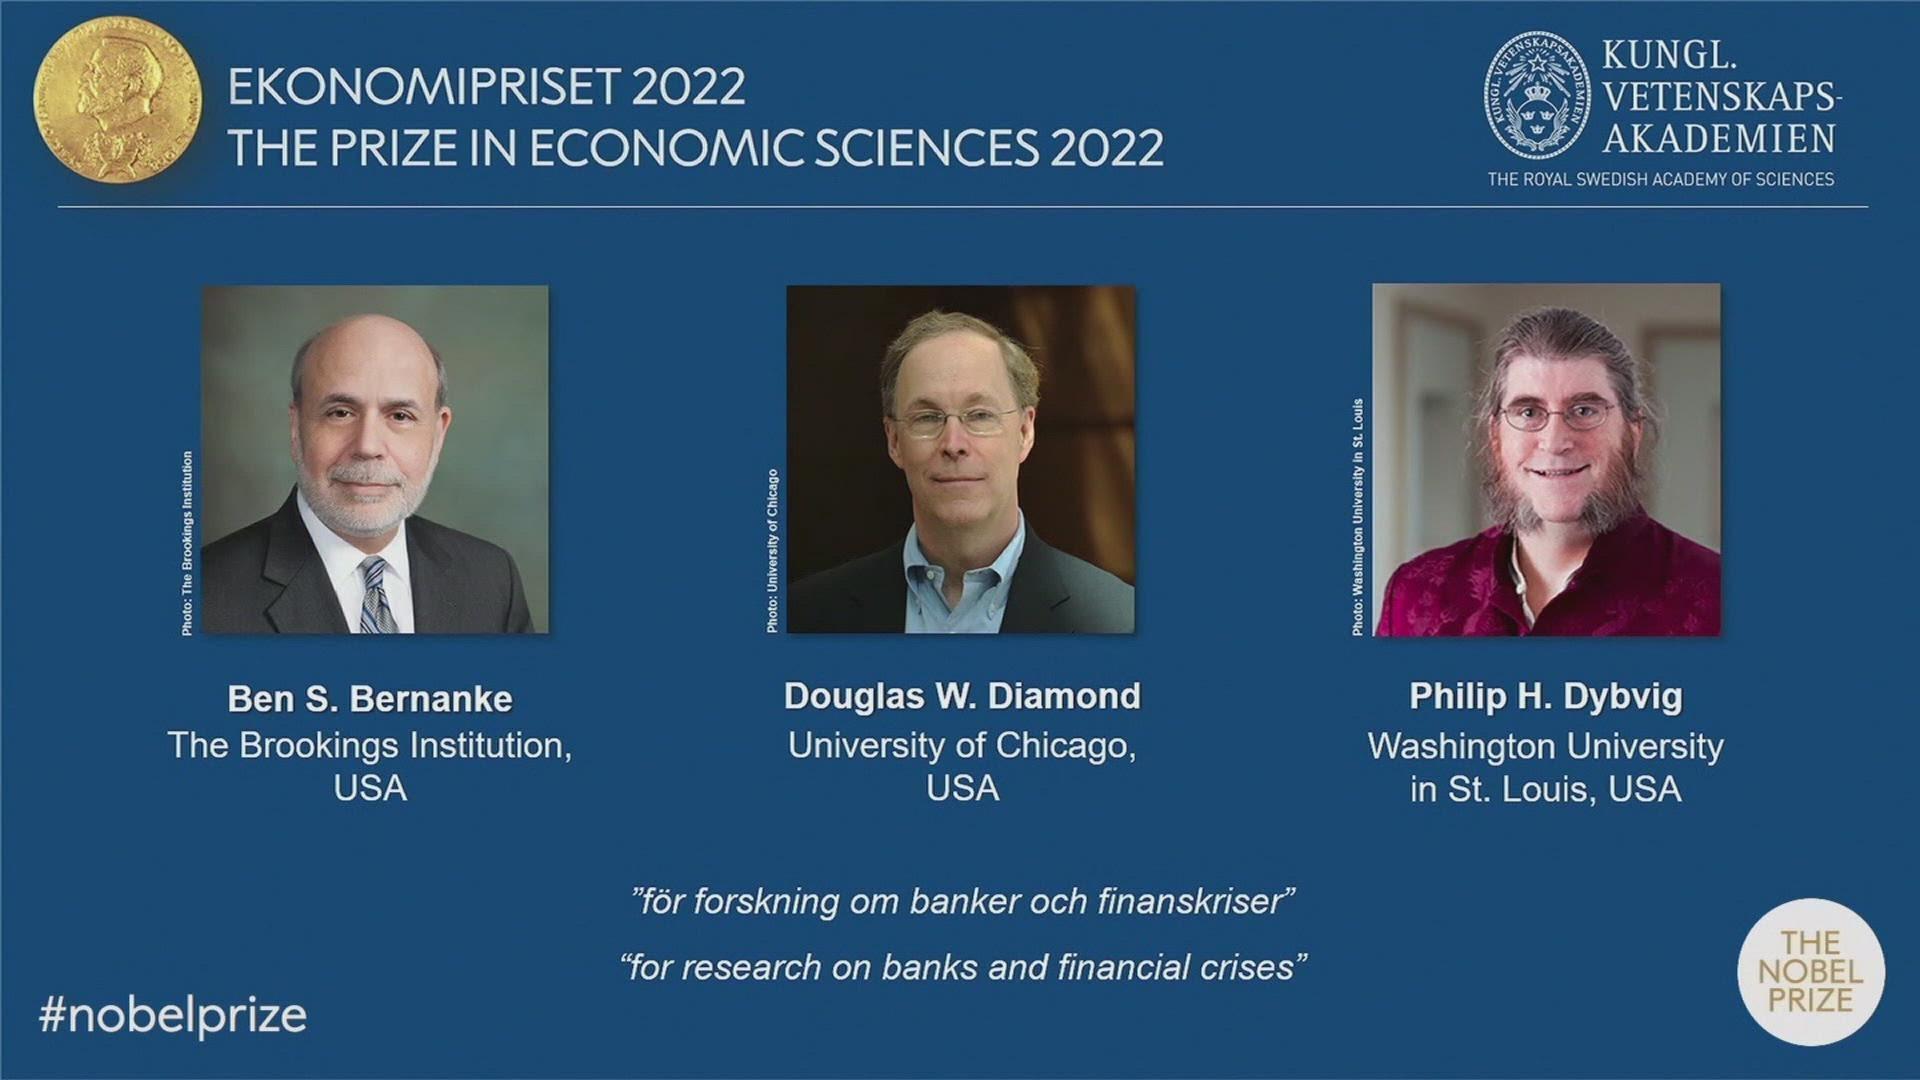 The 2022 economic sciences laureates